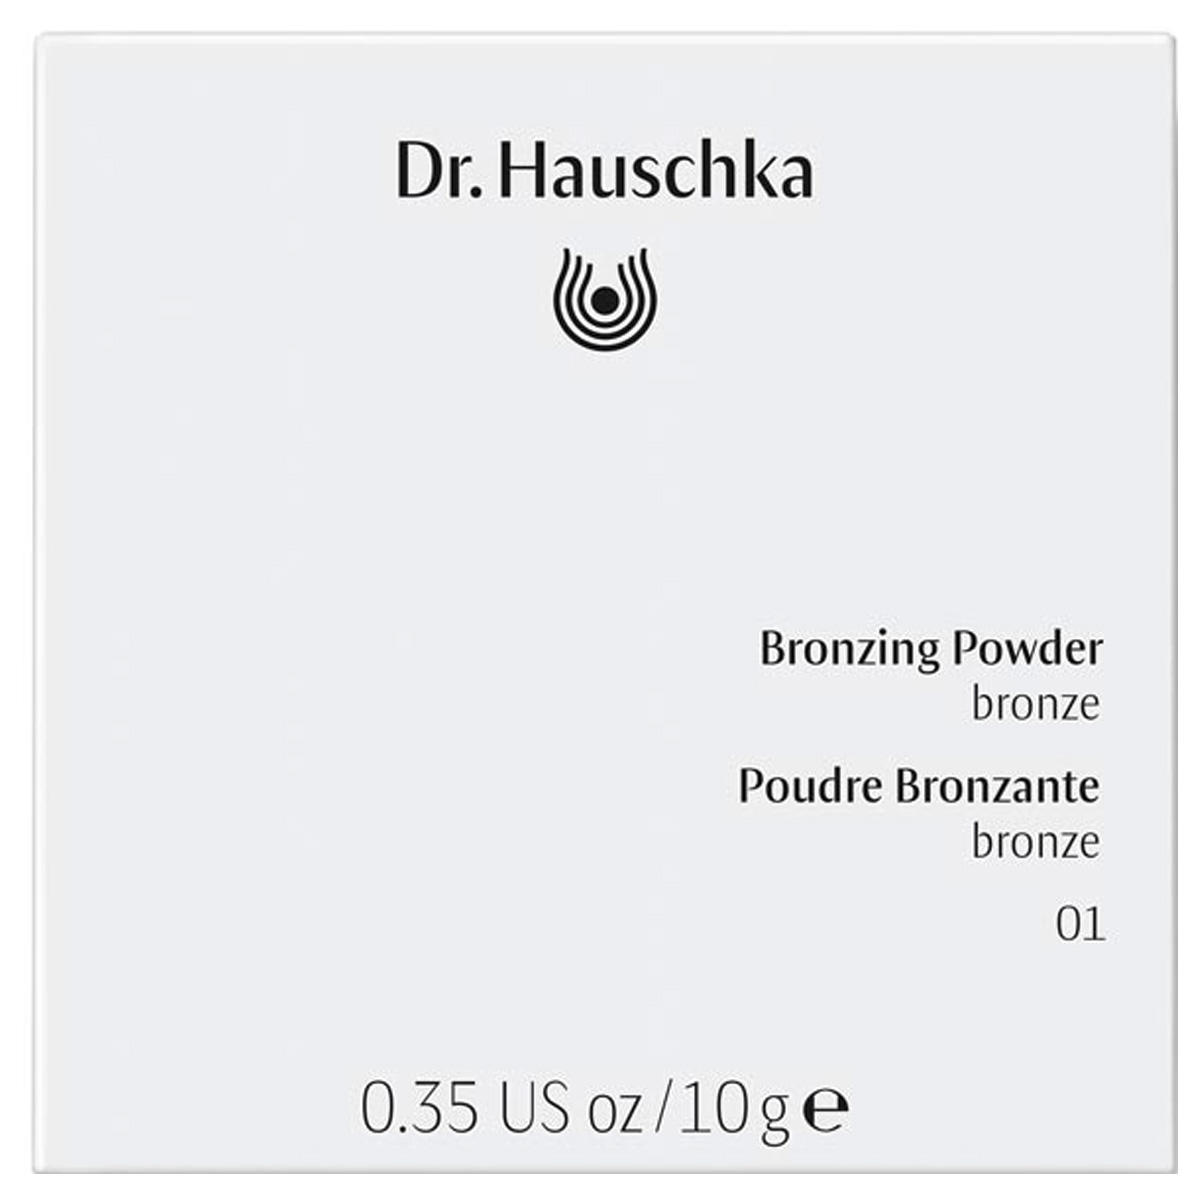 Dr. Hauschka Bronzing Powder 01 bronze, contenu 10 g - 3